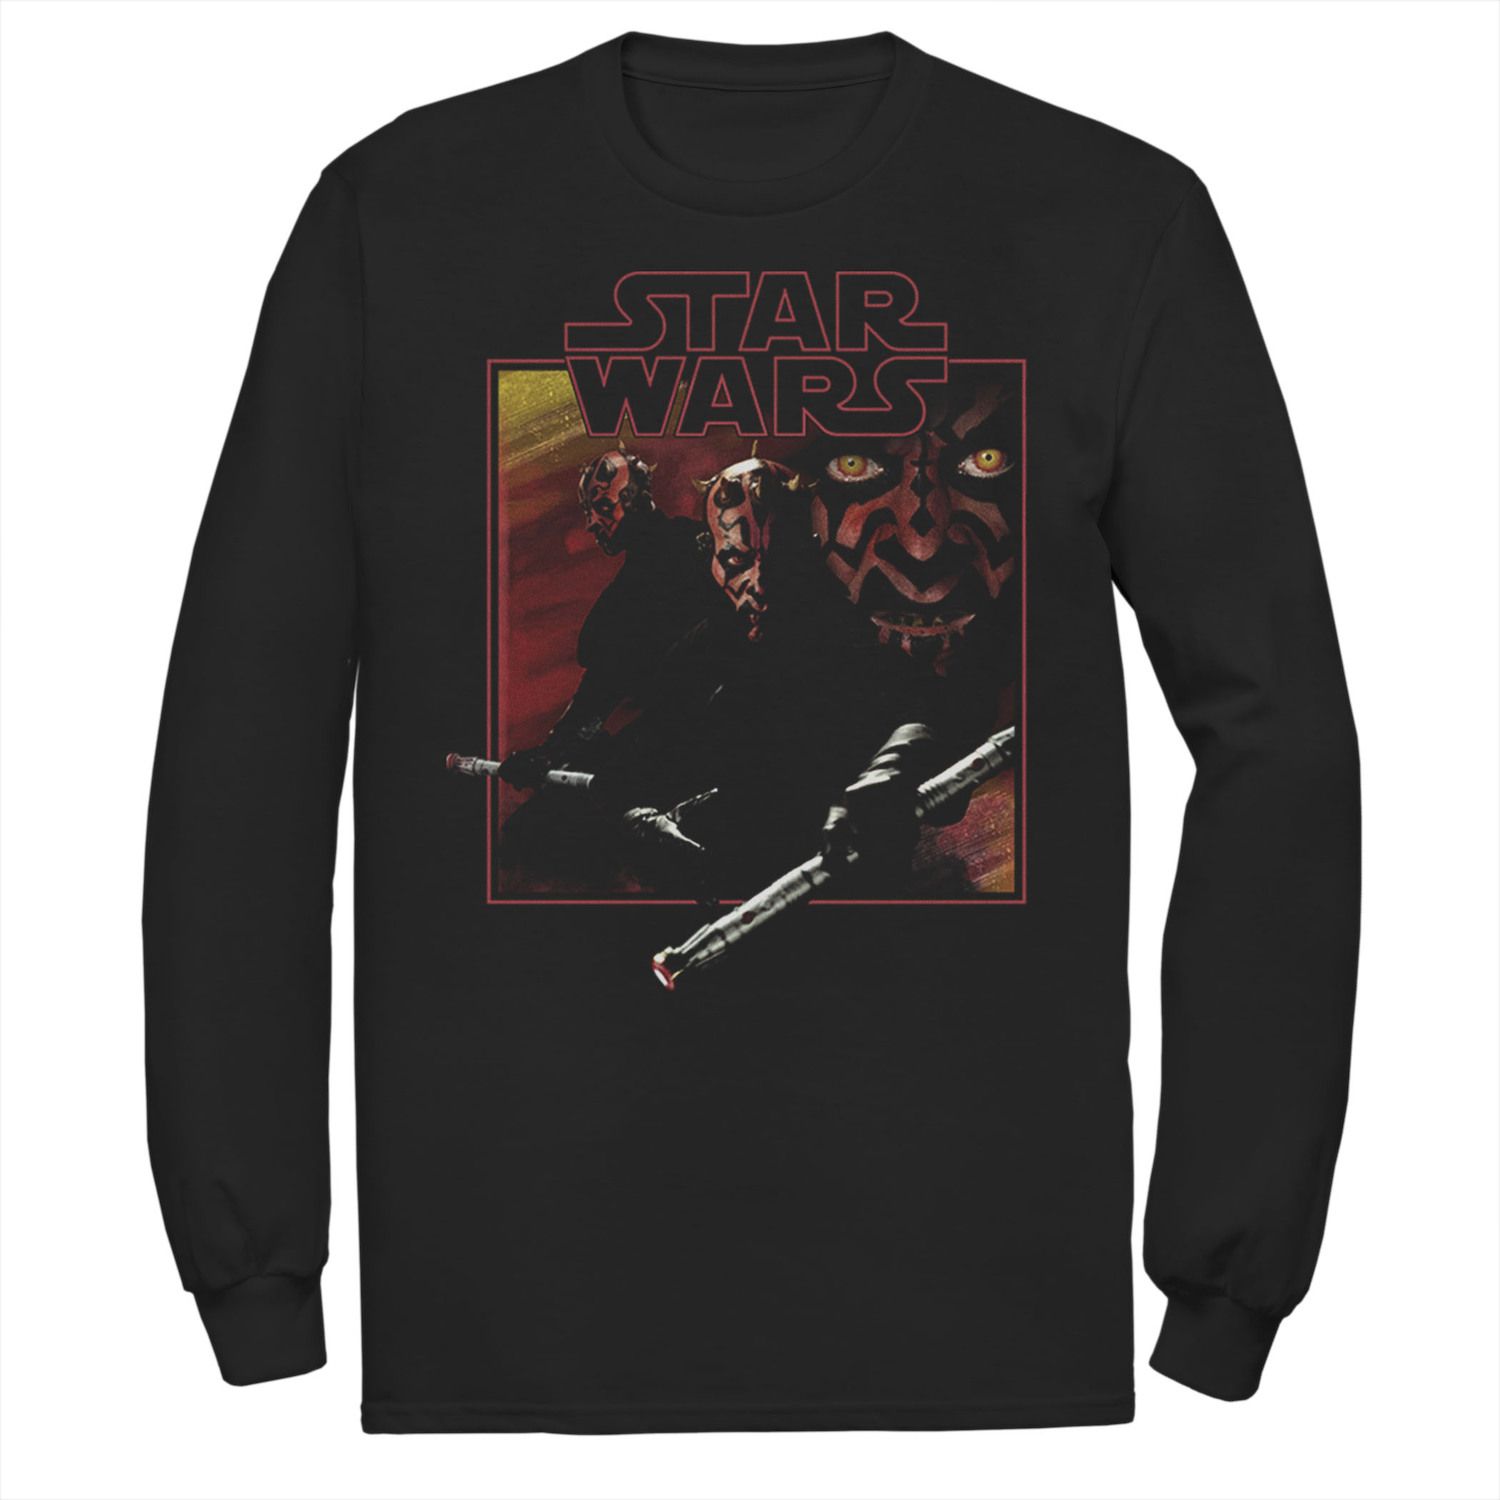 Мужская классическая футболка с квадратным портретом Дарта Мола из фильма Star Wars мужская футболка с анимацией дарта мола star wars